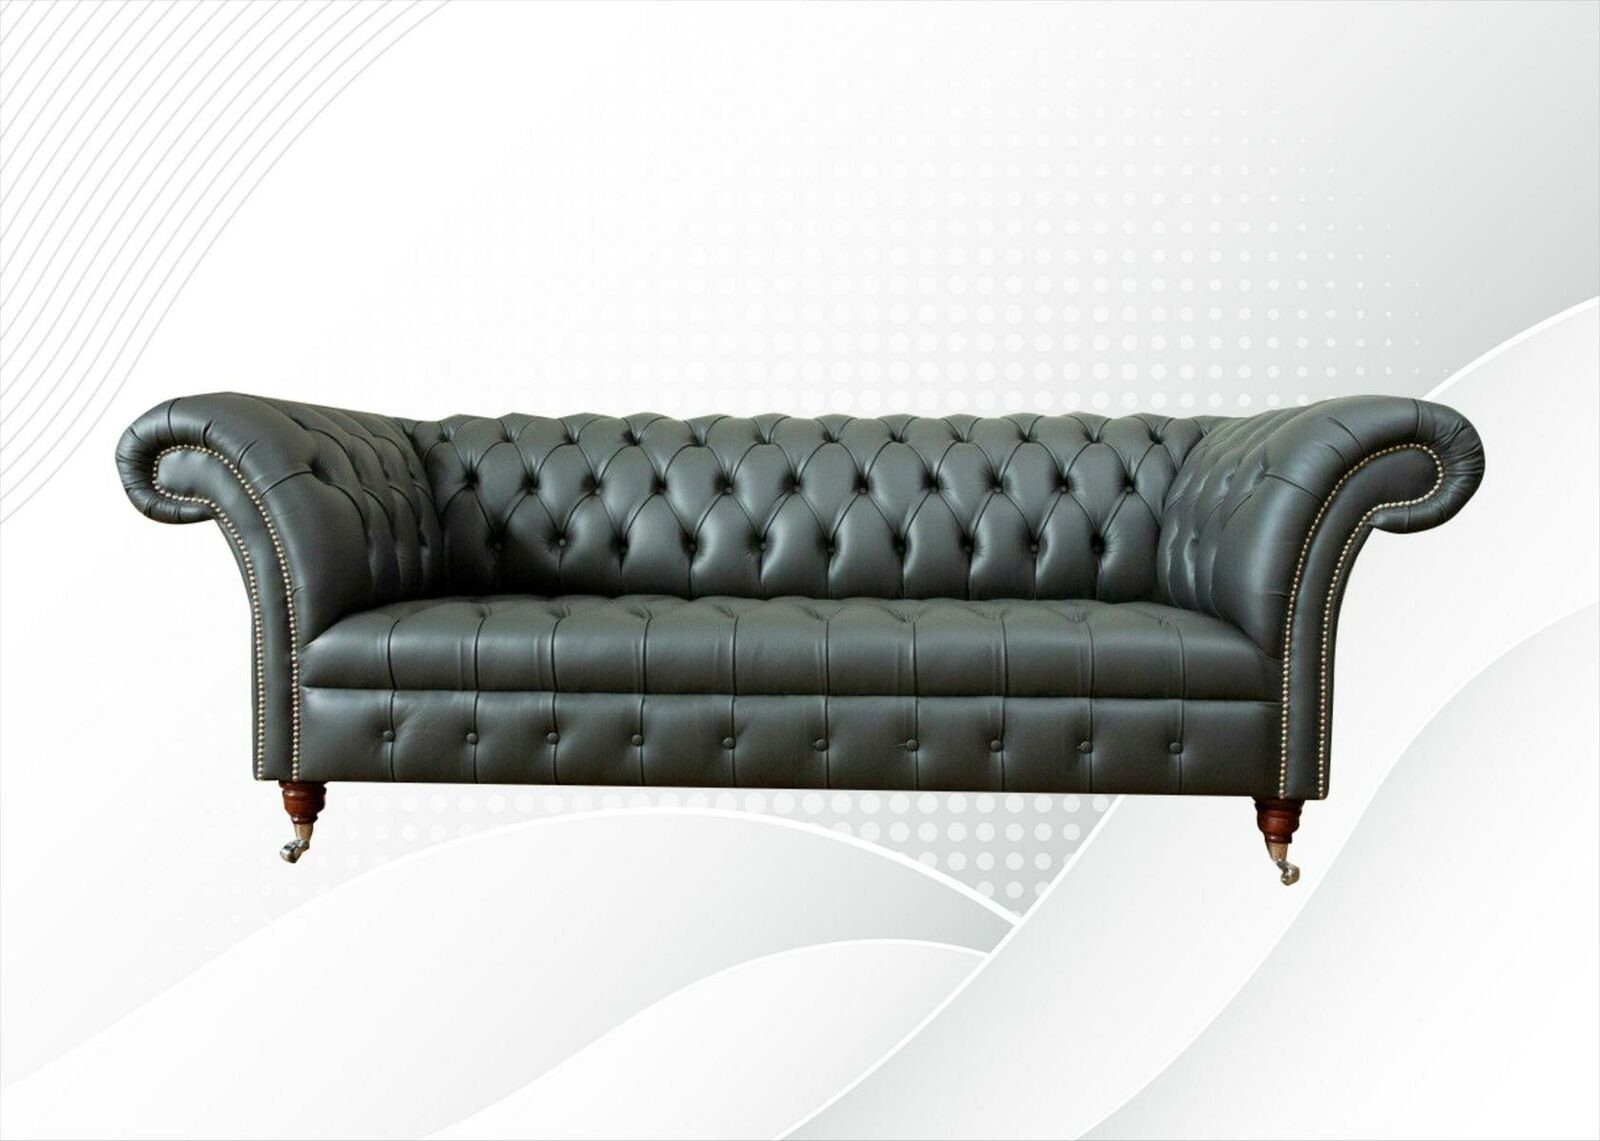 JVmoebel Chesterfield-Sofa, Chesterfield Leder Modern Sofa couchen Graue xxl big Sofas Design Möbel Couchen